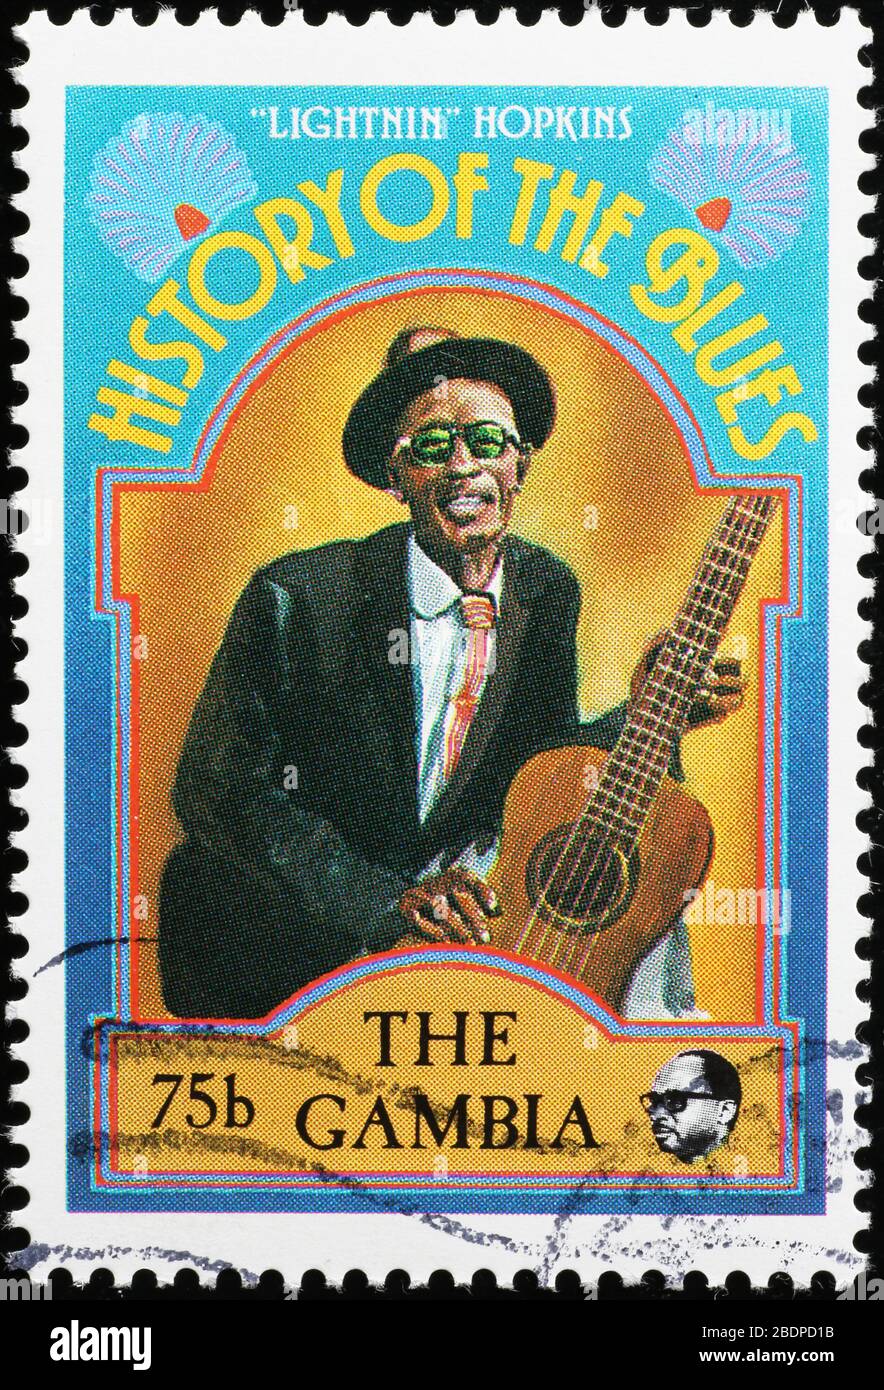 Histoire des bleus, Lightnin'Hopkins sur timbre-poste Banque D'Images